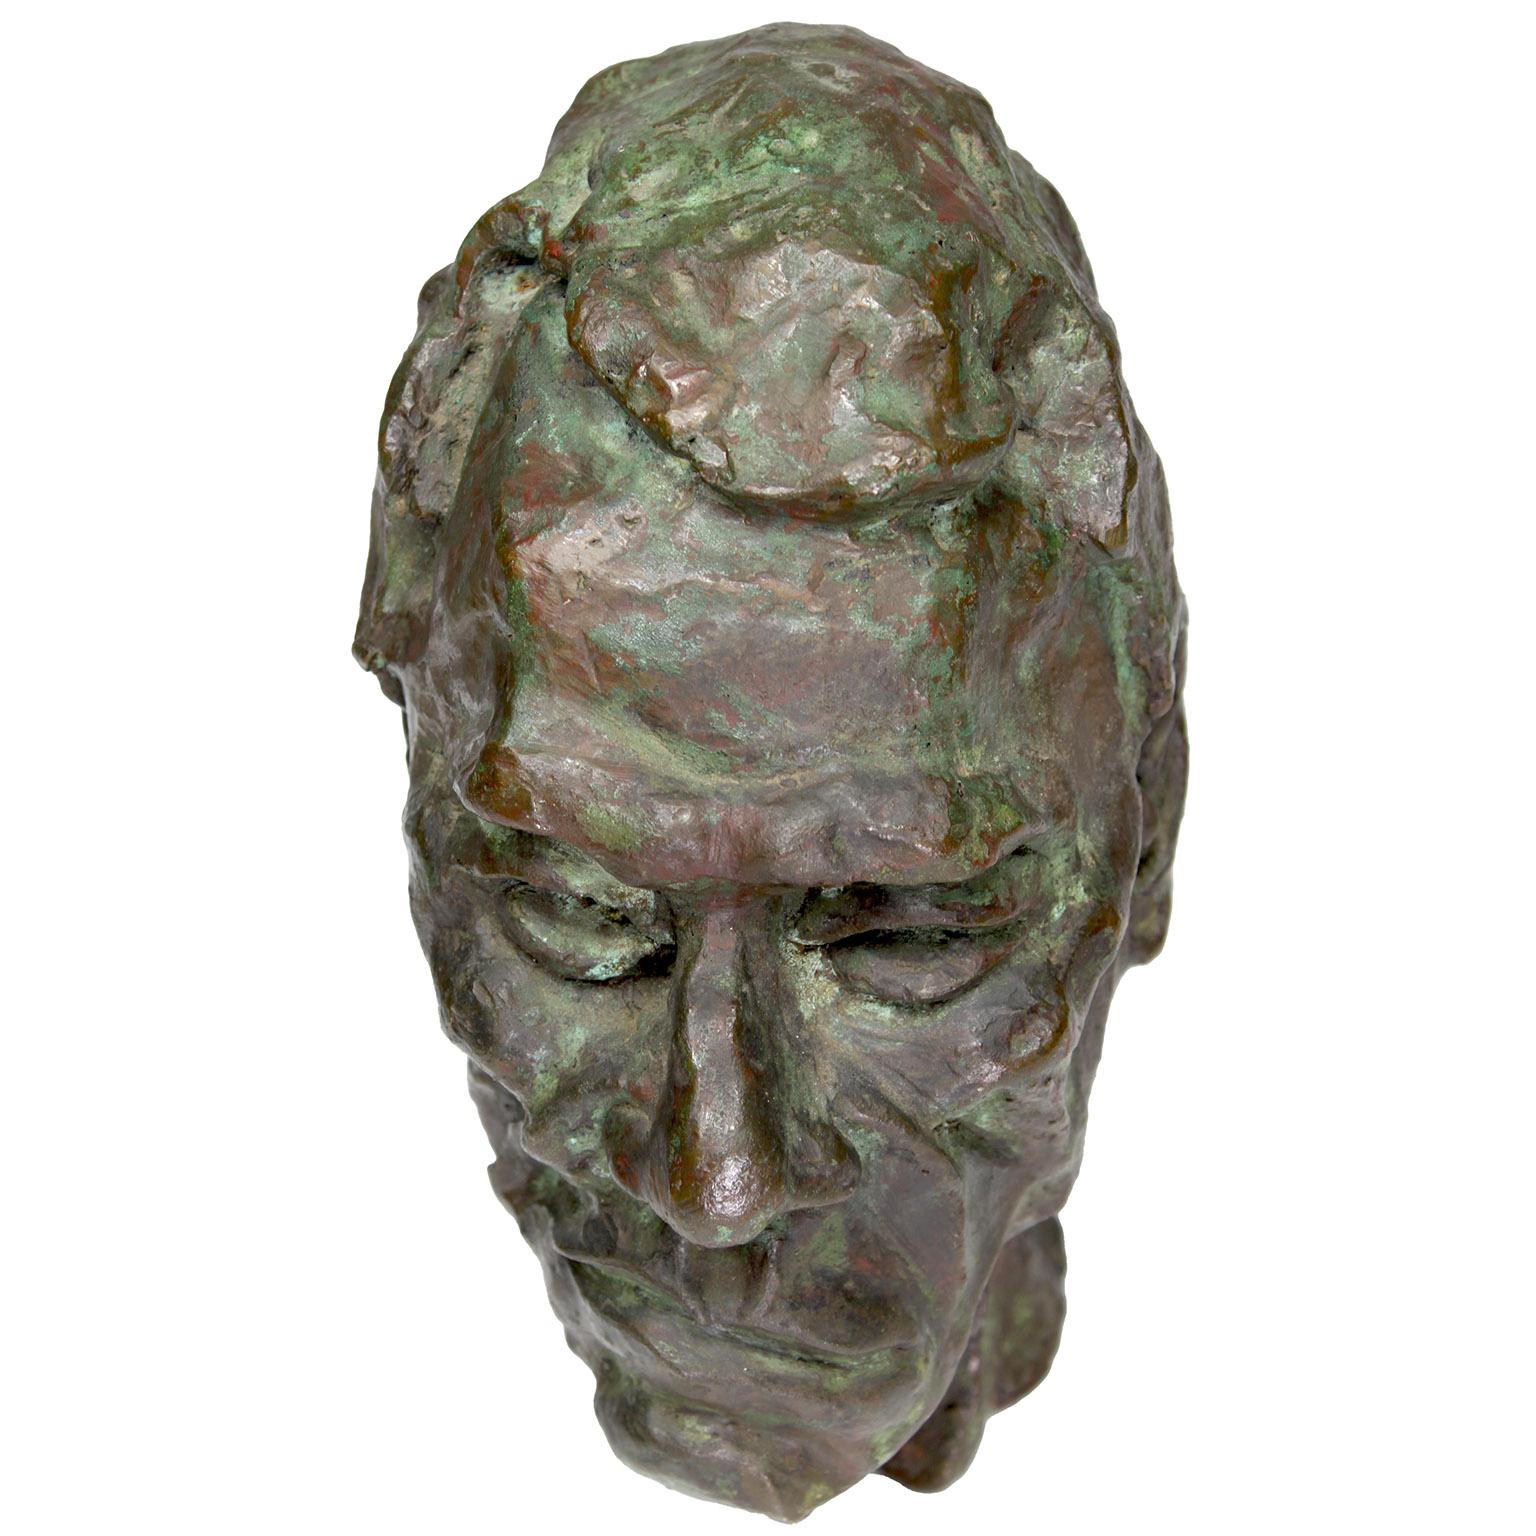 Buste en bronze d'un homme à la manière de Sir Jacob Epstein (britannique, 1880-1959), artiste inconnu. Ce bronze patiné vert, d'une grande beauté, ressemble quelque peu au buste de Josef Holbrooke (1978-1958), compositeur et pianiste anglais,